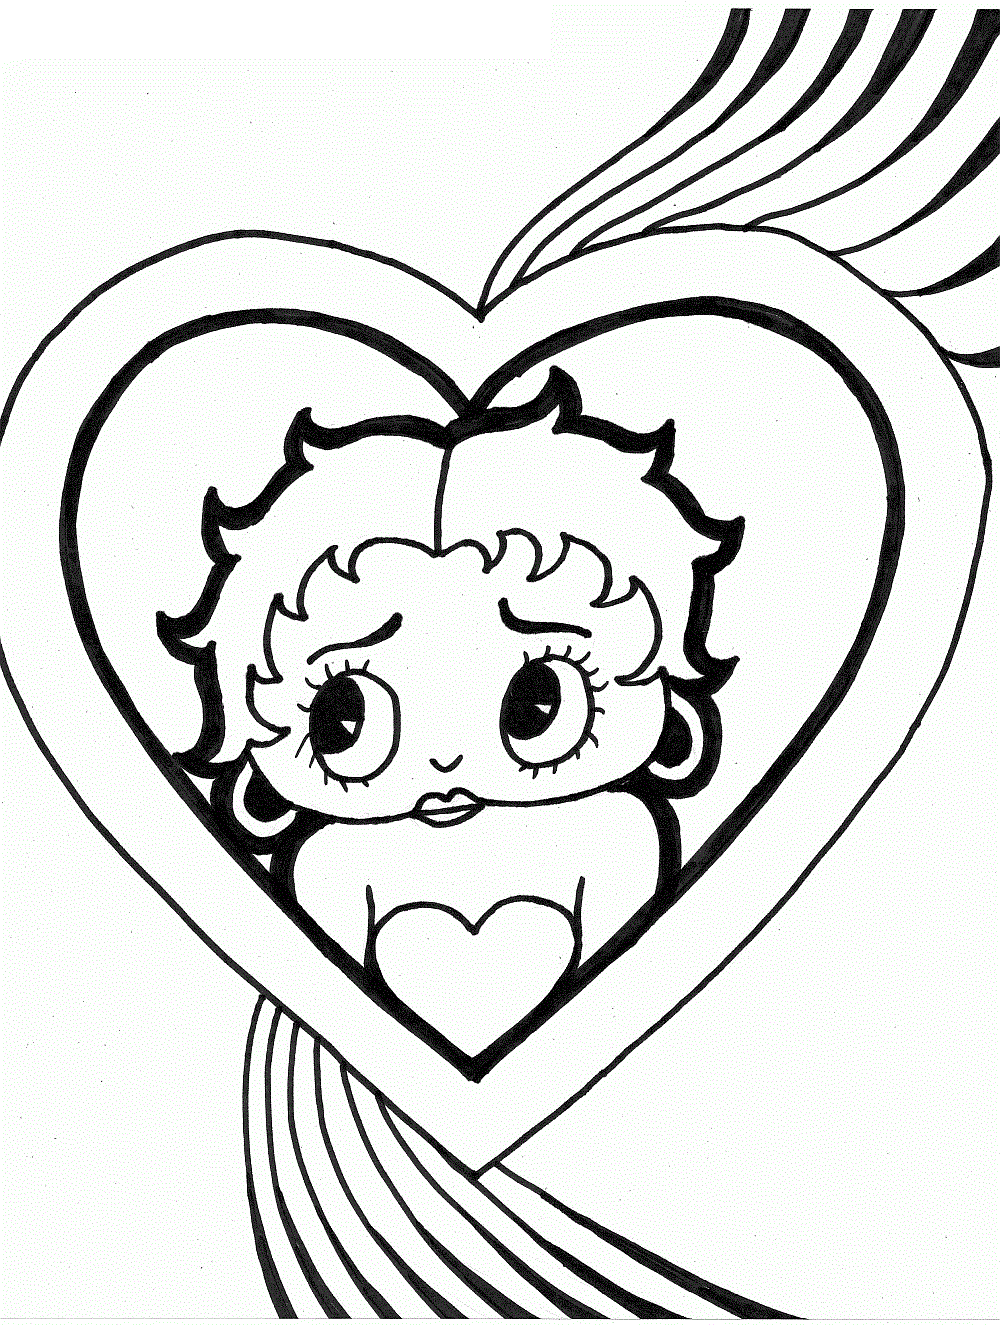 Broken Hearts coloring, Download Broken Hearts coloring for free 2019